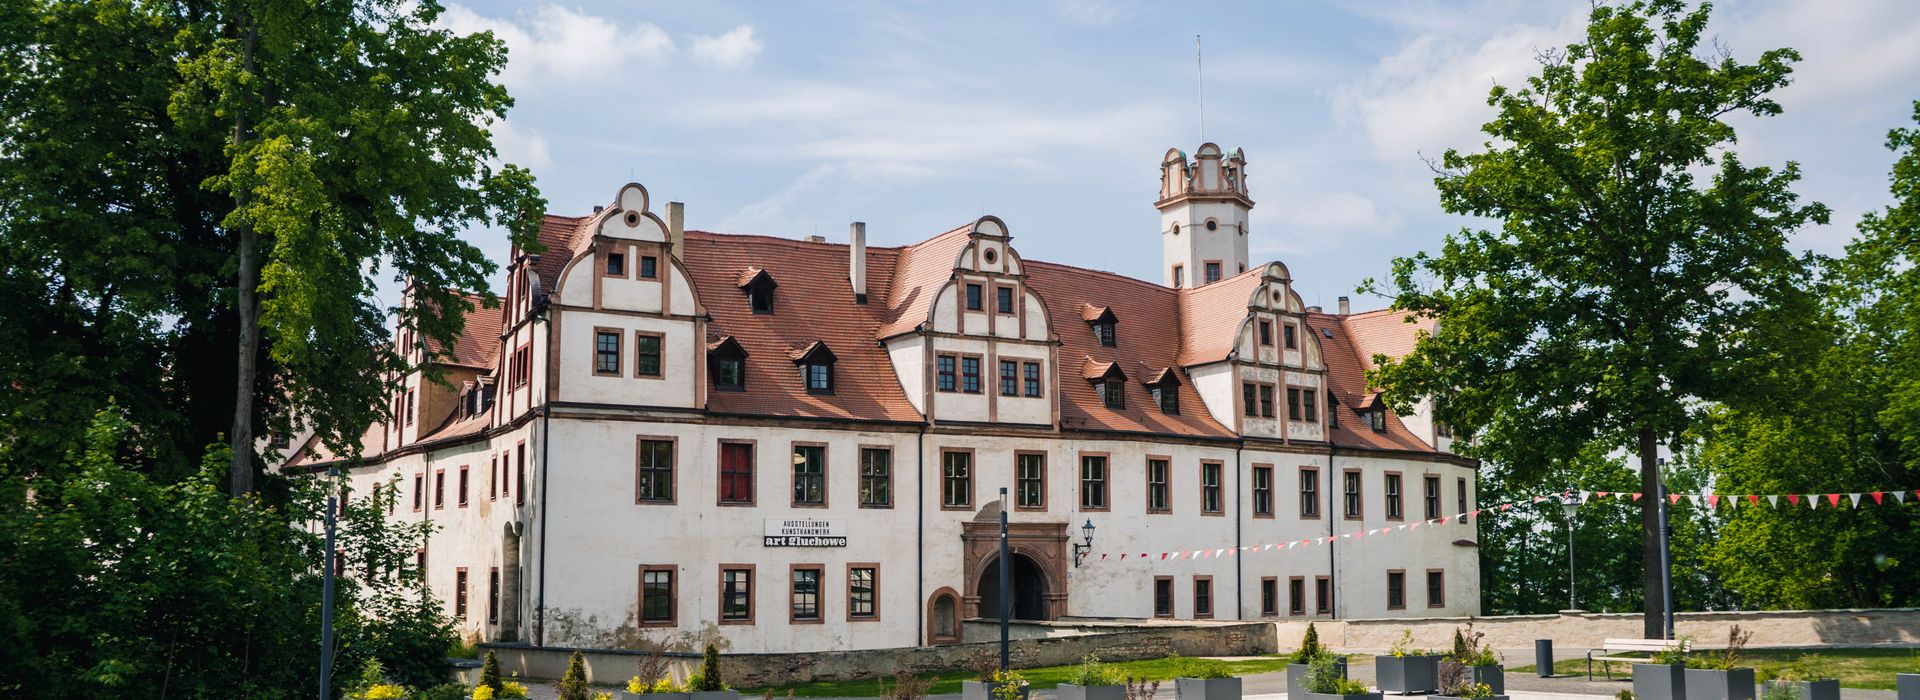 Fachwerkhaus in Zwickau